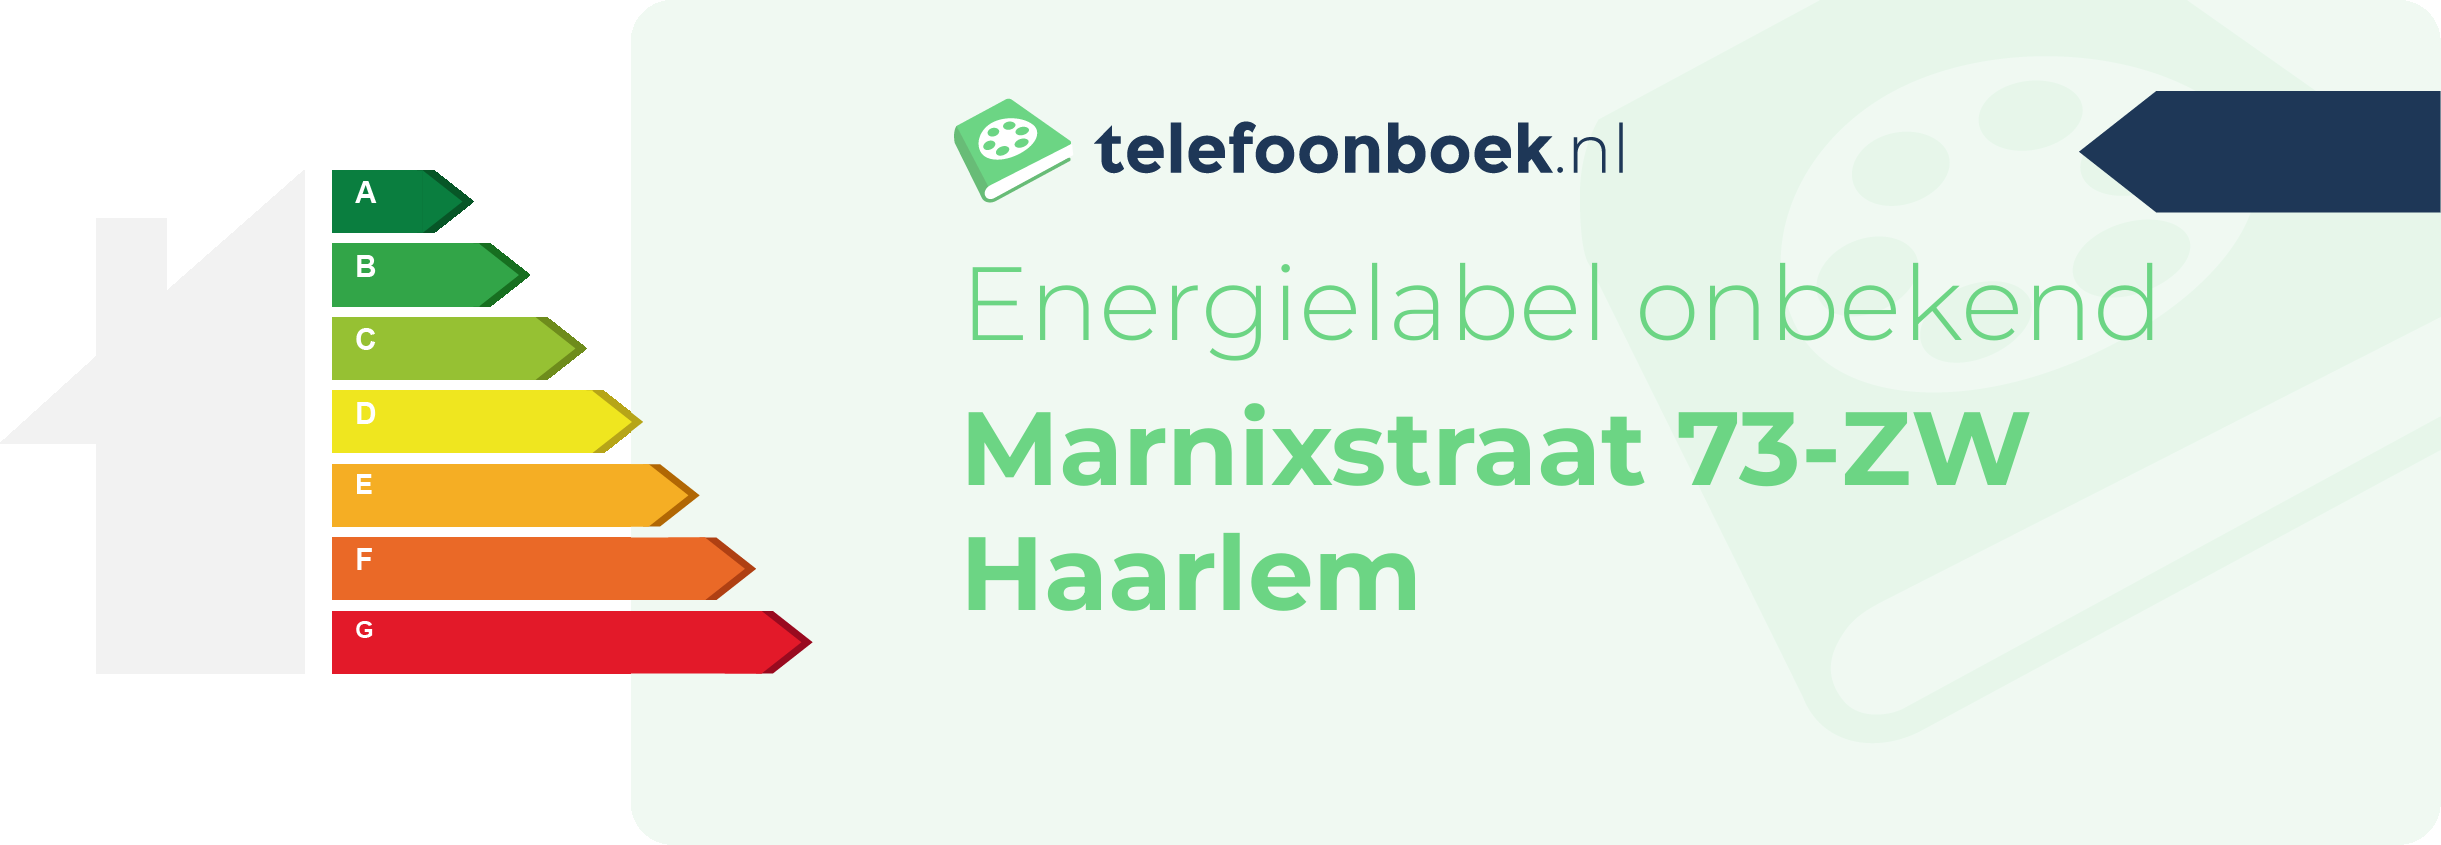 Energielabel Marnixstraat 73-ZW Haarlem